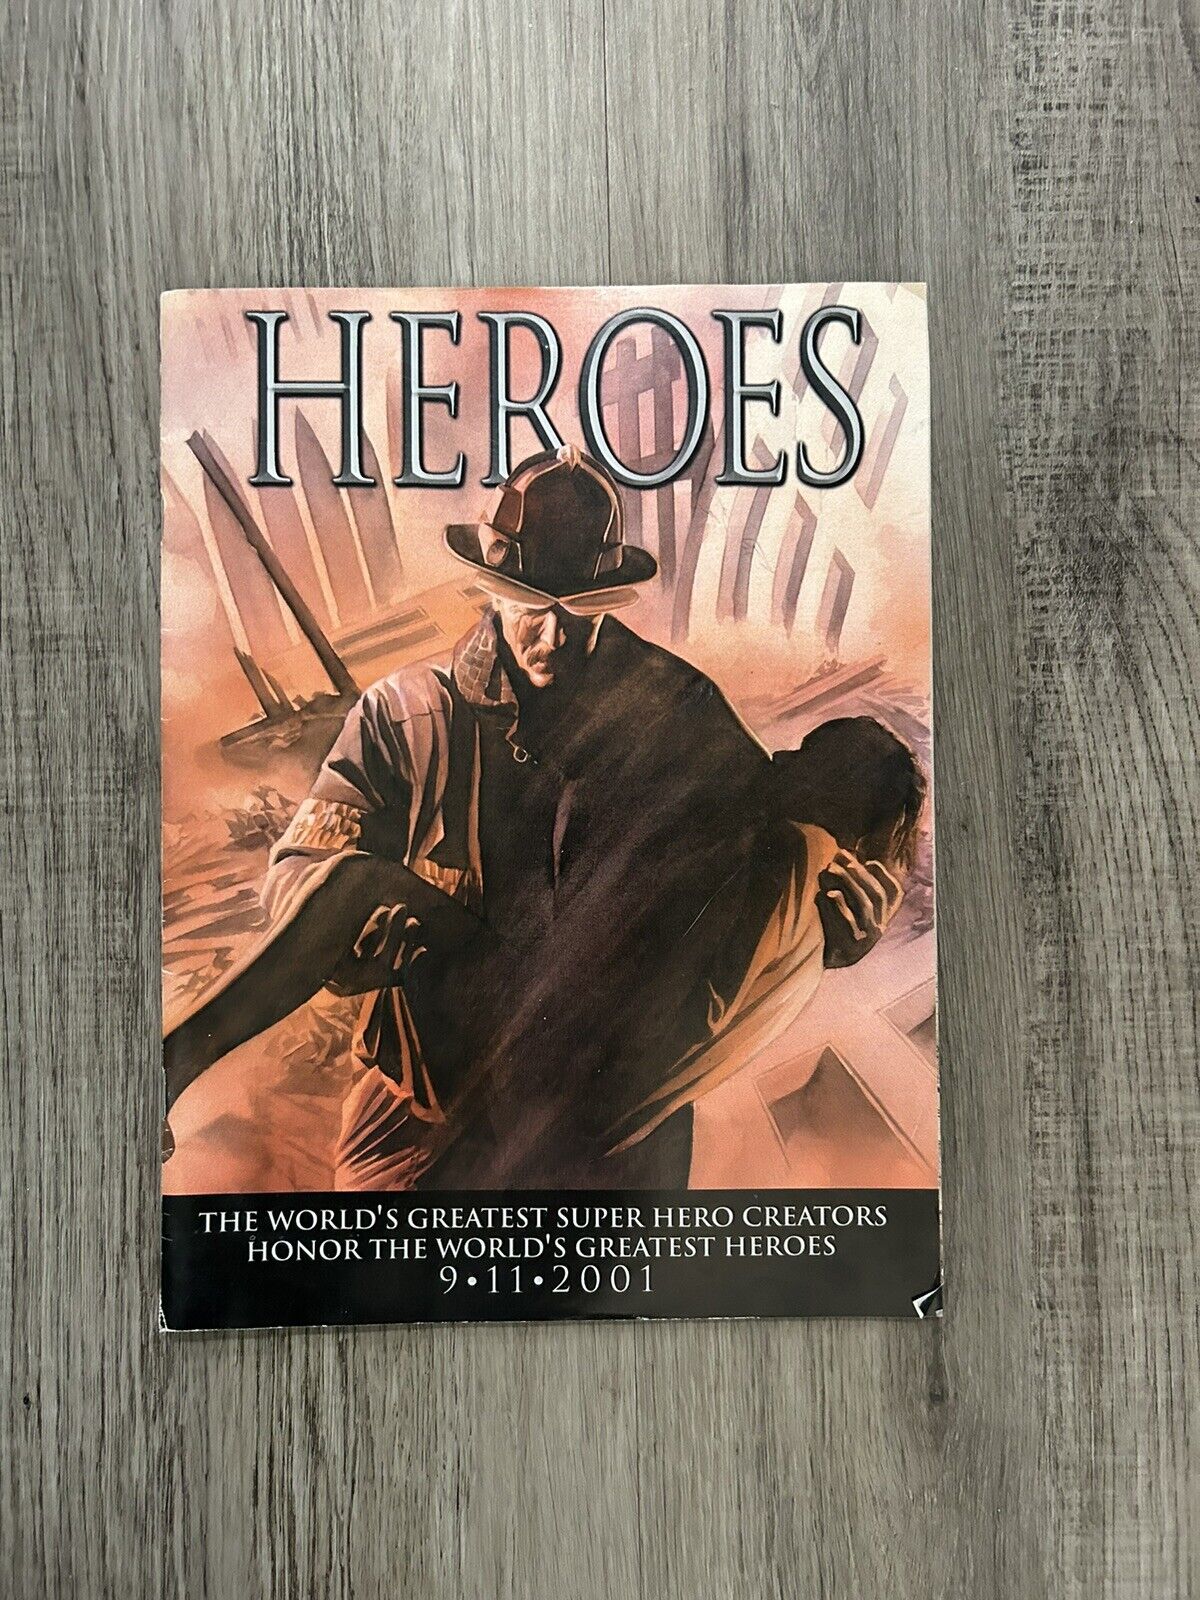 HEROES 9-11-2001 MARVEL COMICS MAGAZINE